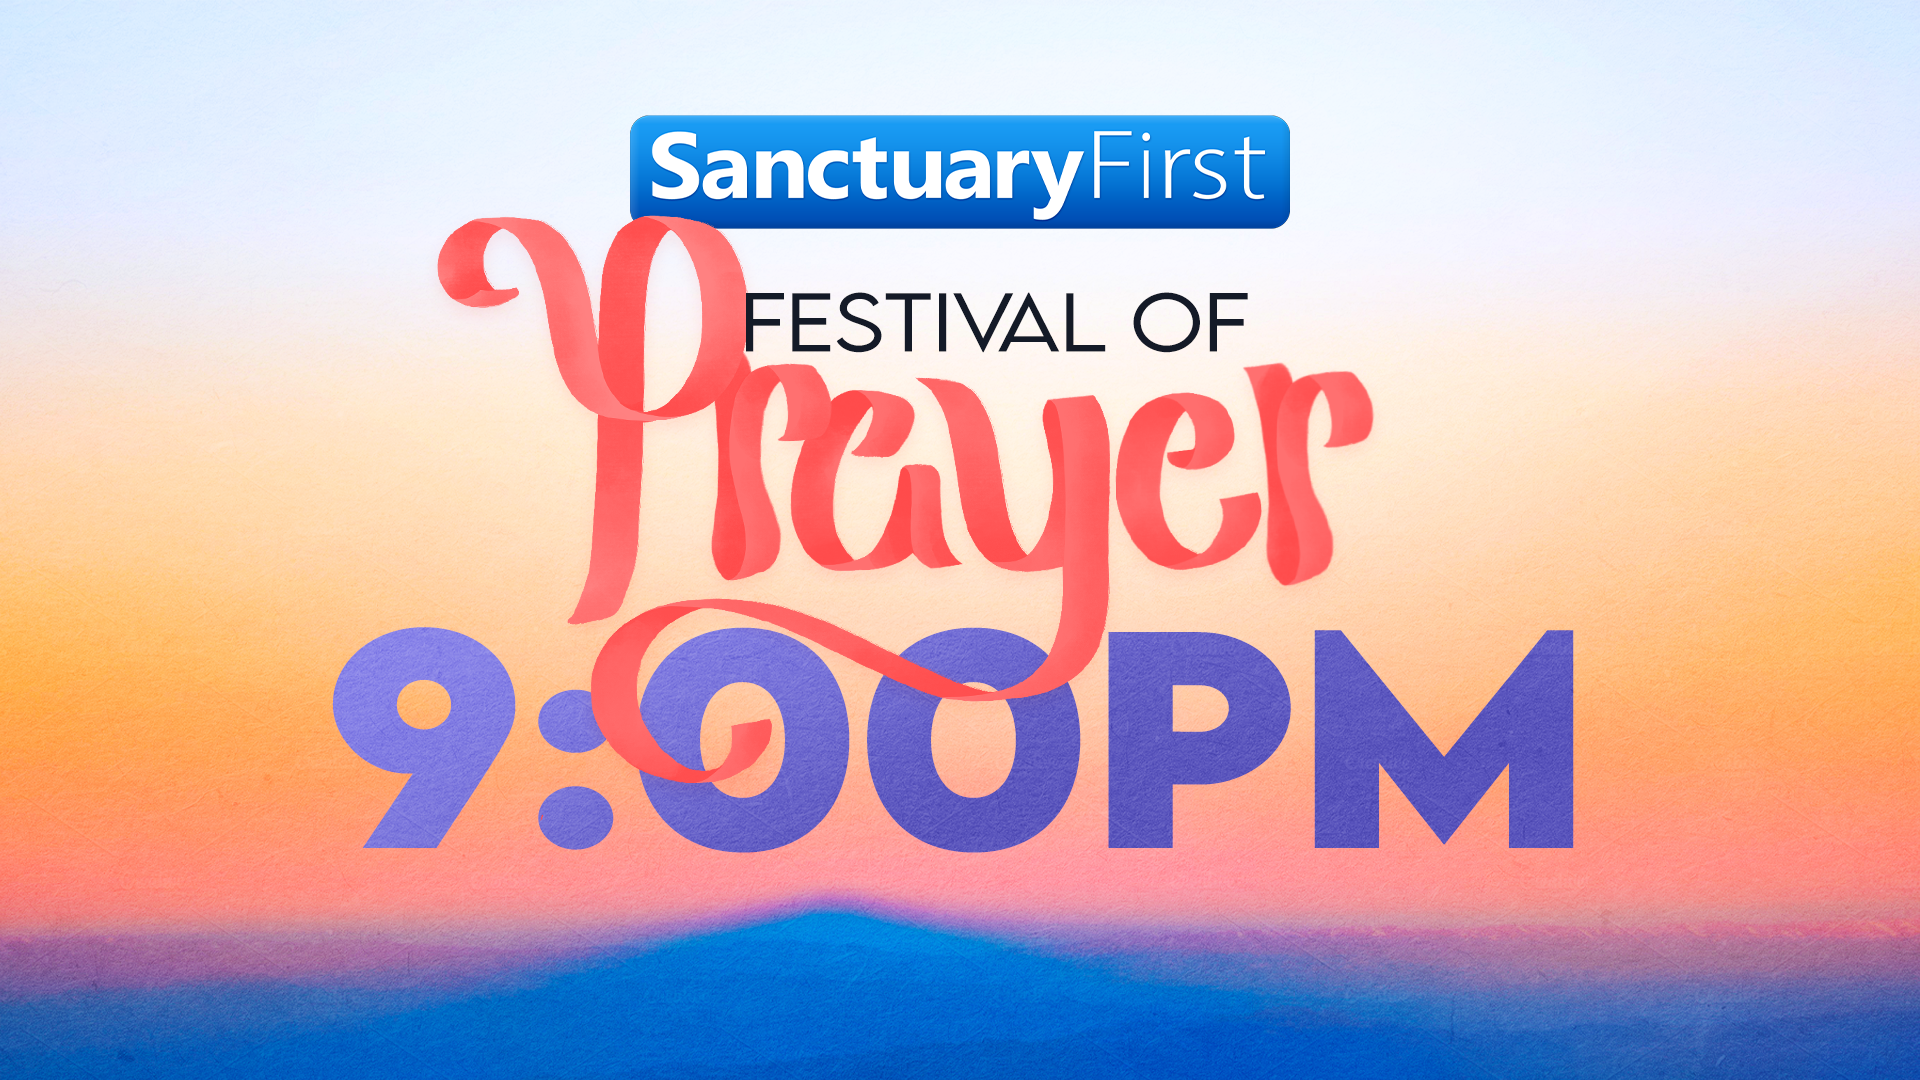 24hr Festival of Prayer - 9PM